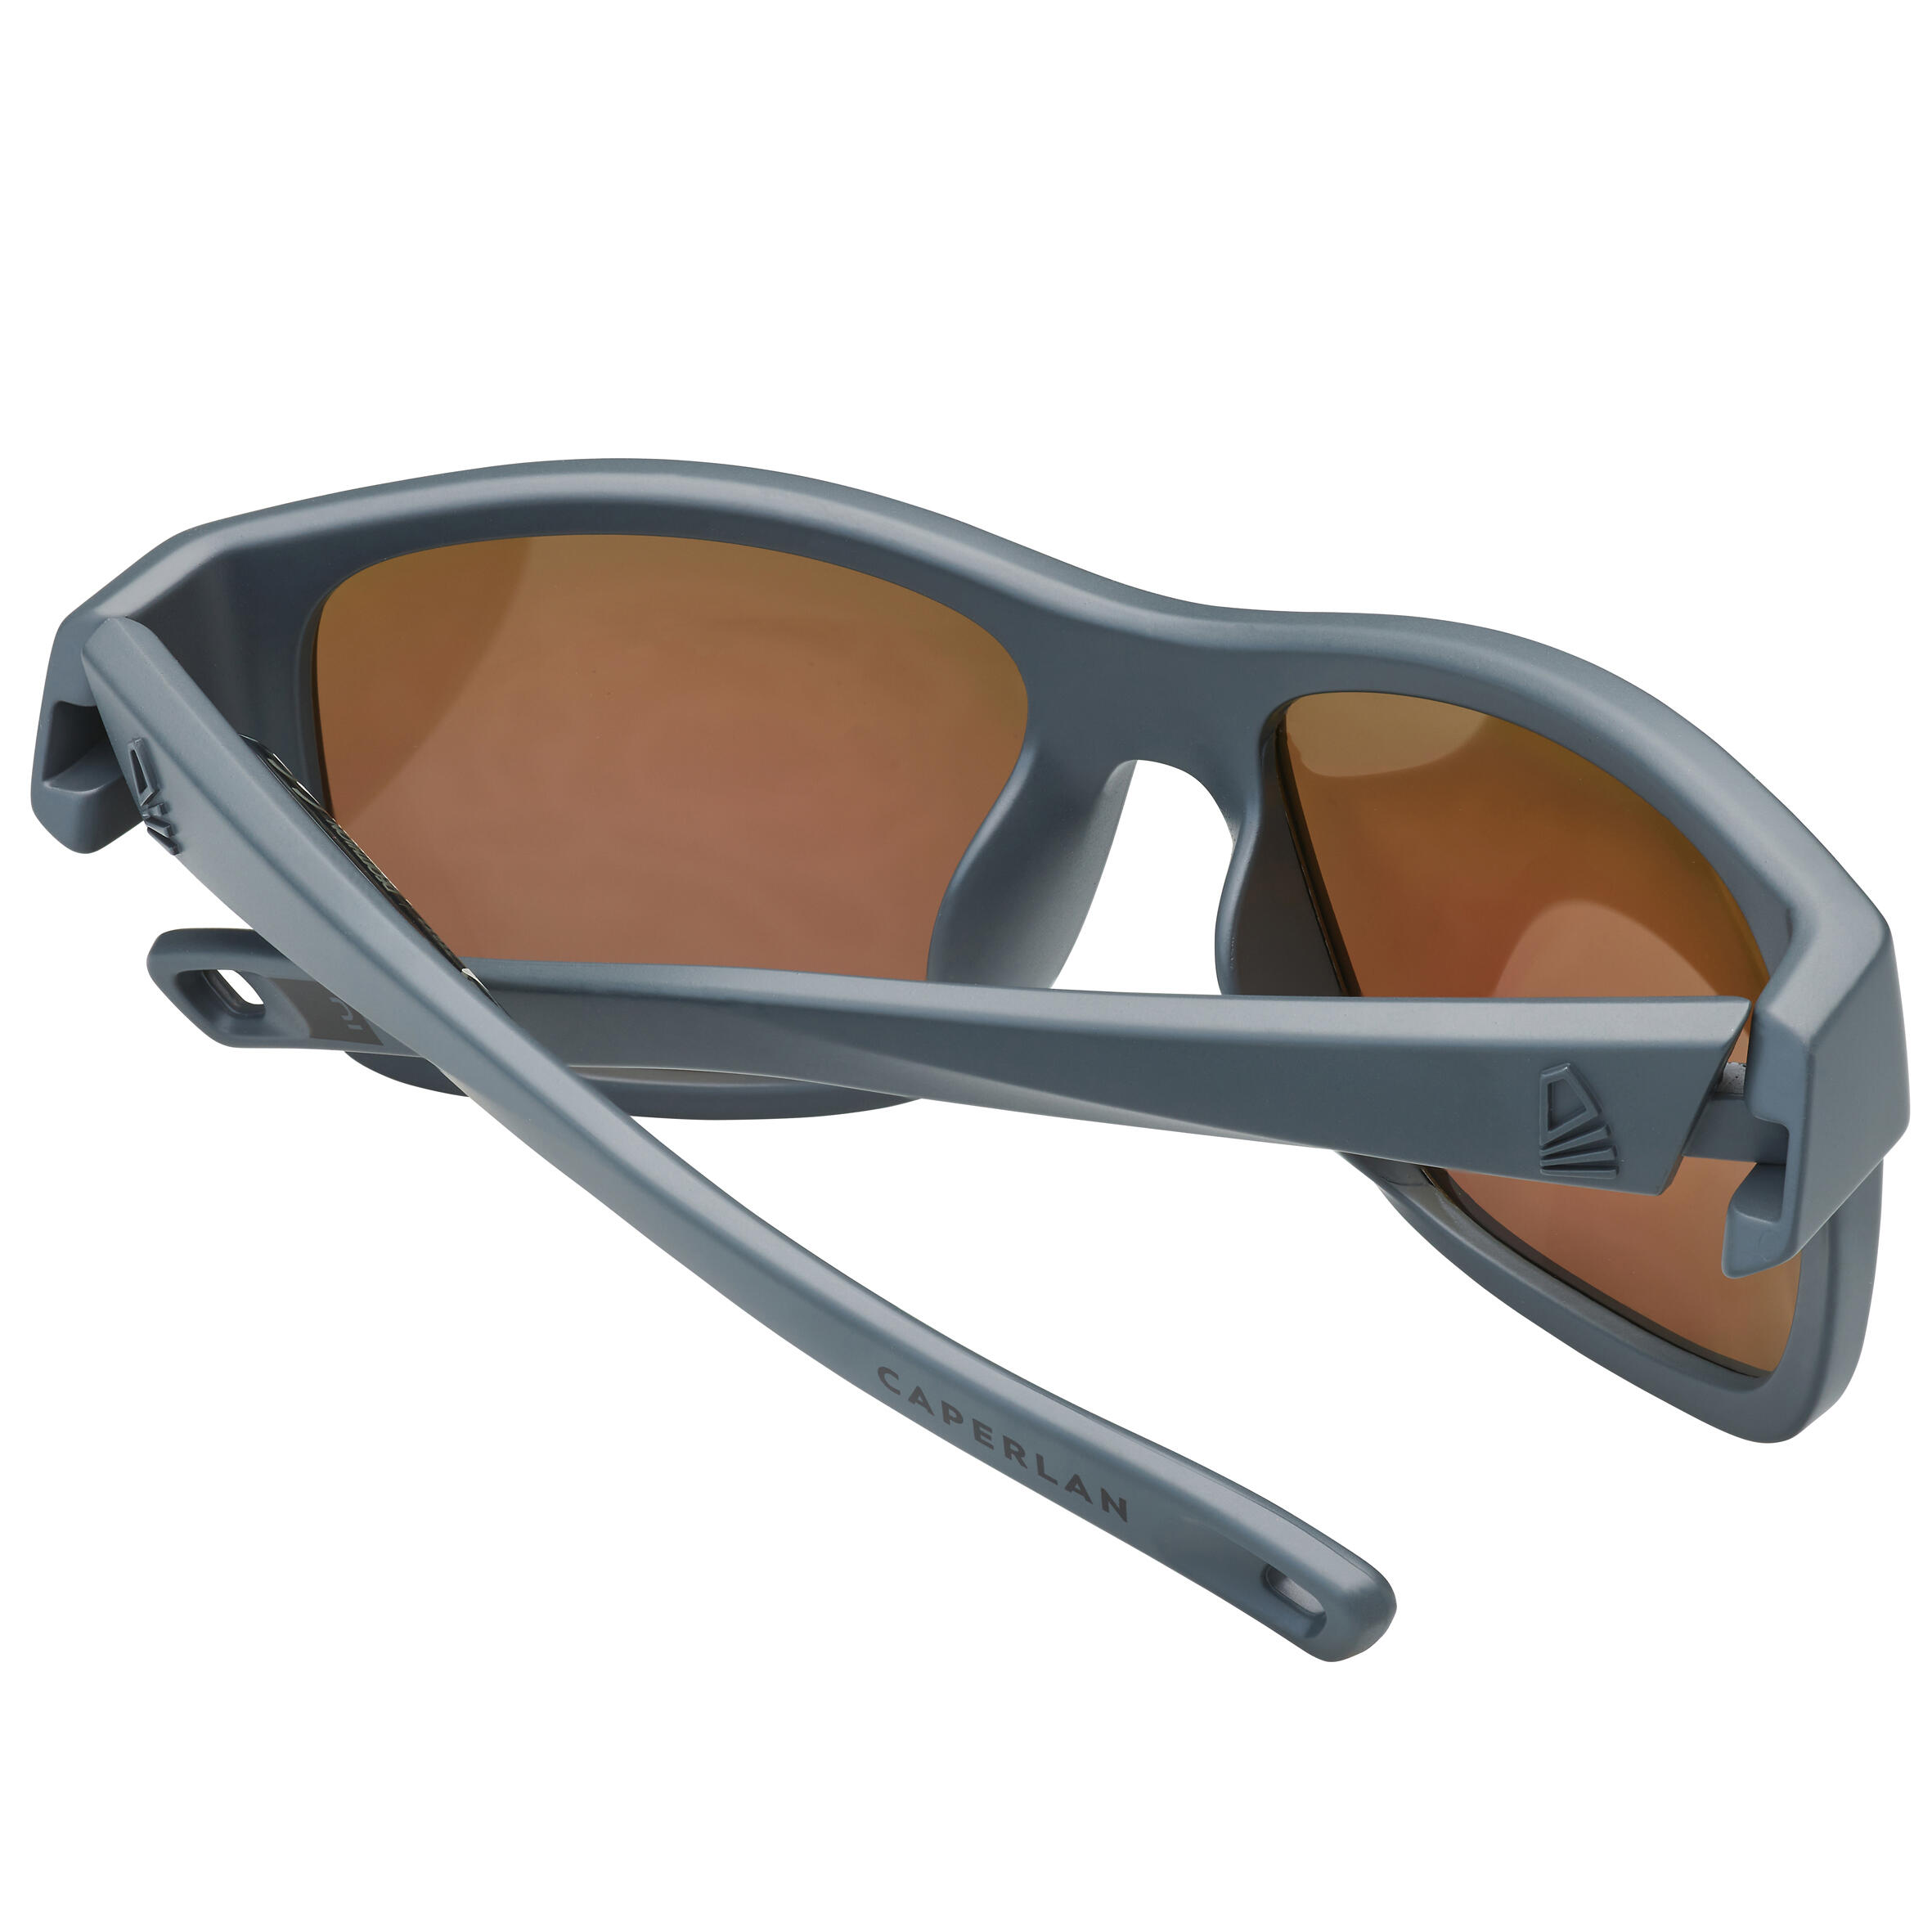 Fishing polarised floating sunglasses - FG 500 - Grey 6/6